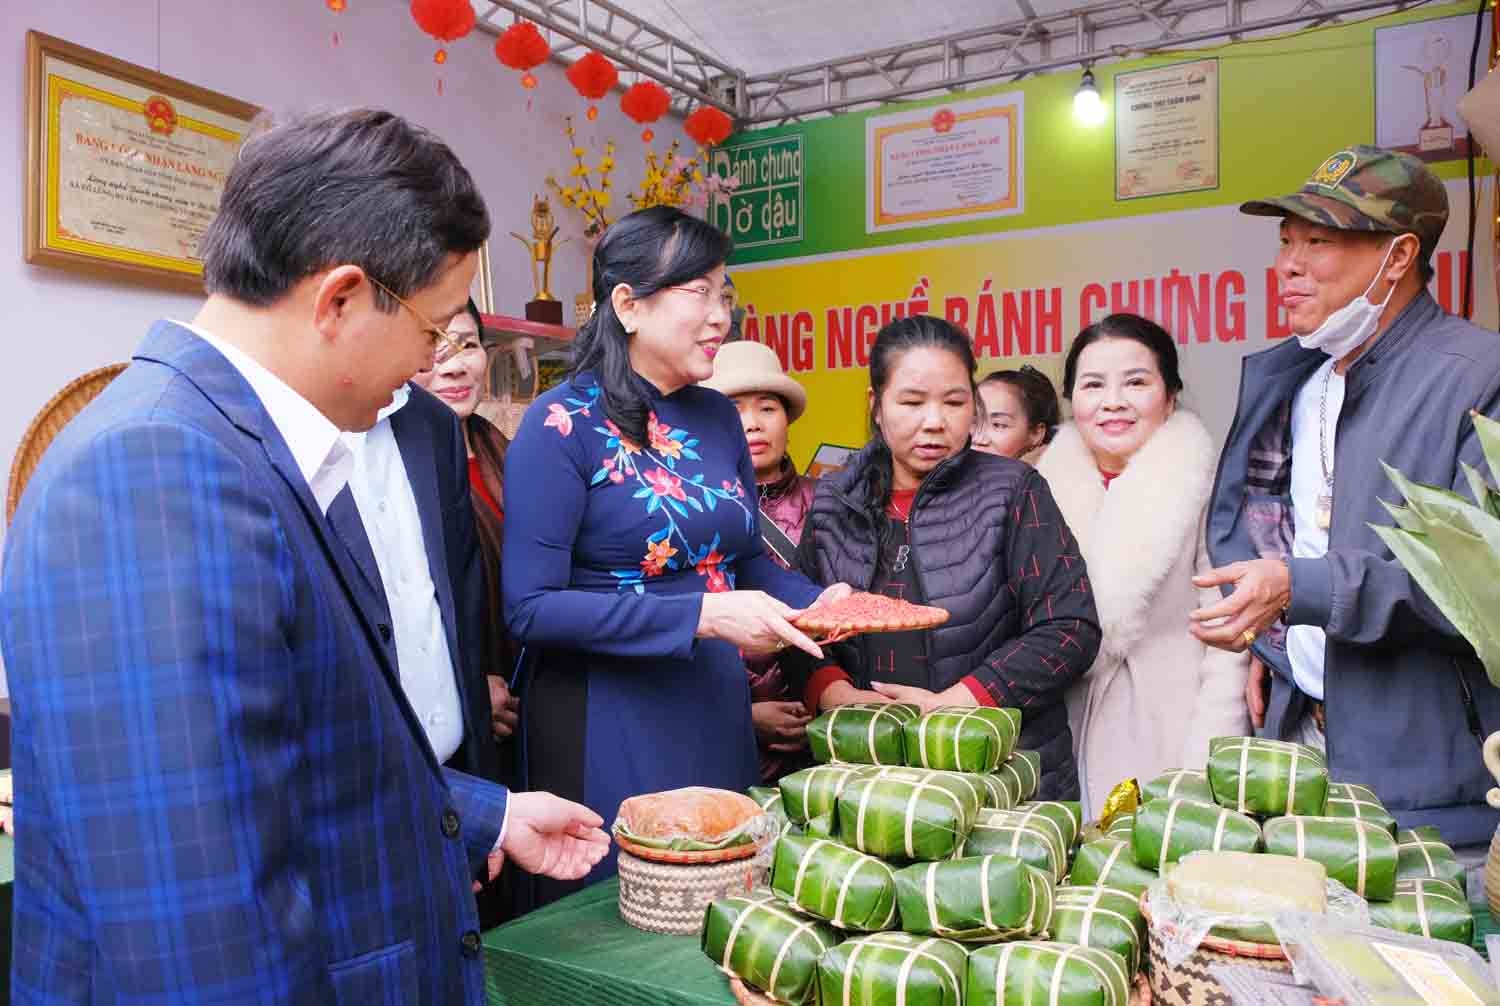 Bí thư Tỉnh ủy Nguyễn Thanh Hải cùng các đại biểu thăm khu trưng bày các sản phẩm thế mạnh của huyện Phú Lương